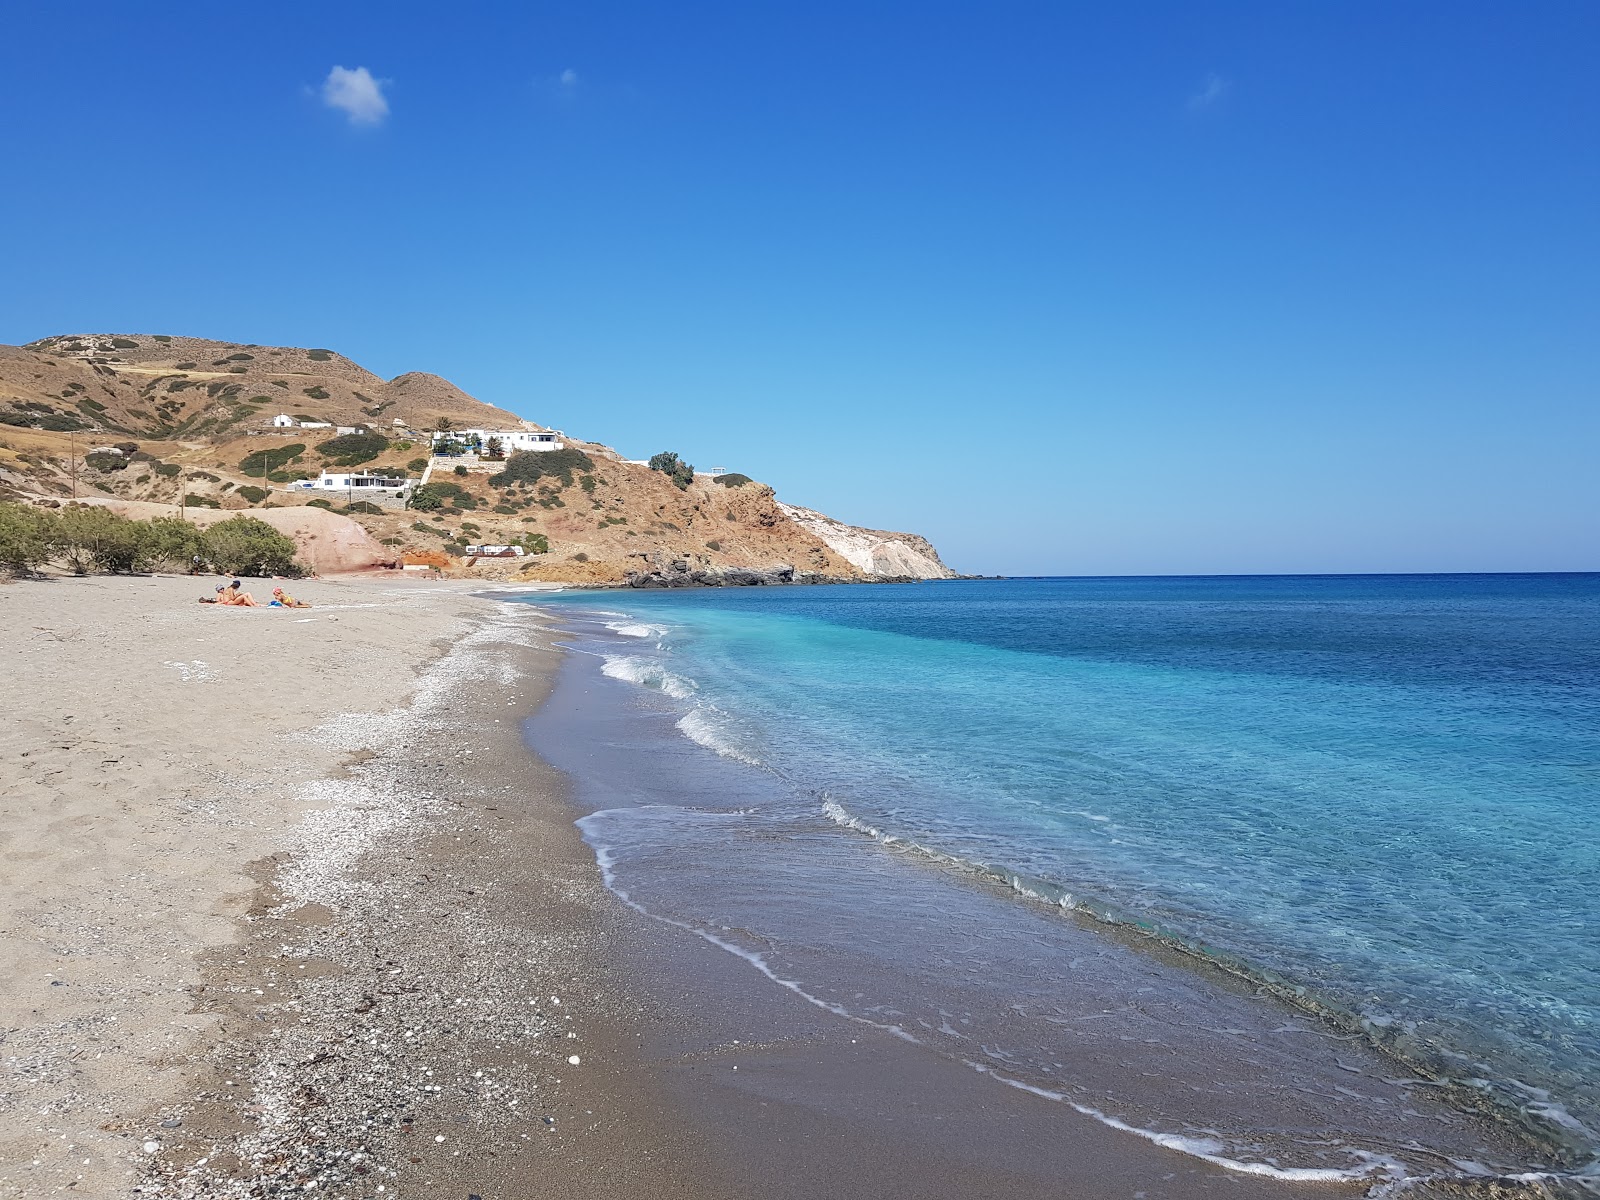 Agia Kiriaki beach'in fotoğrafı geniş ile birlikte